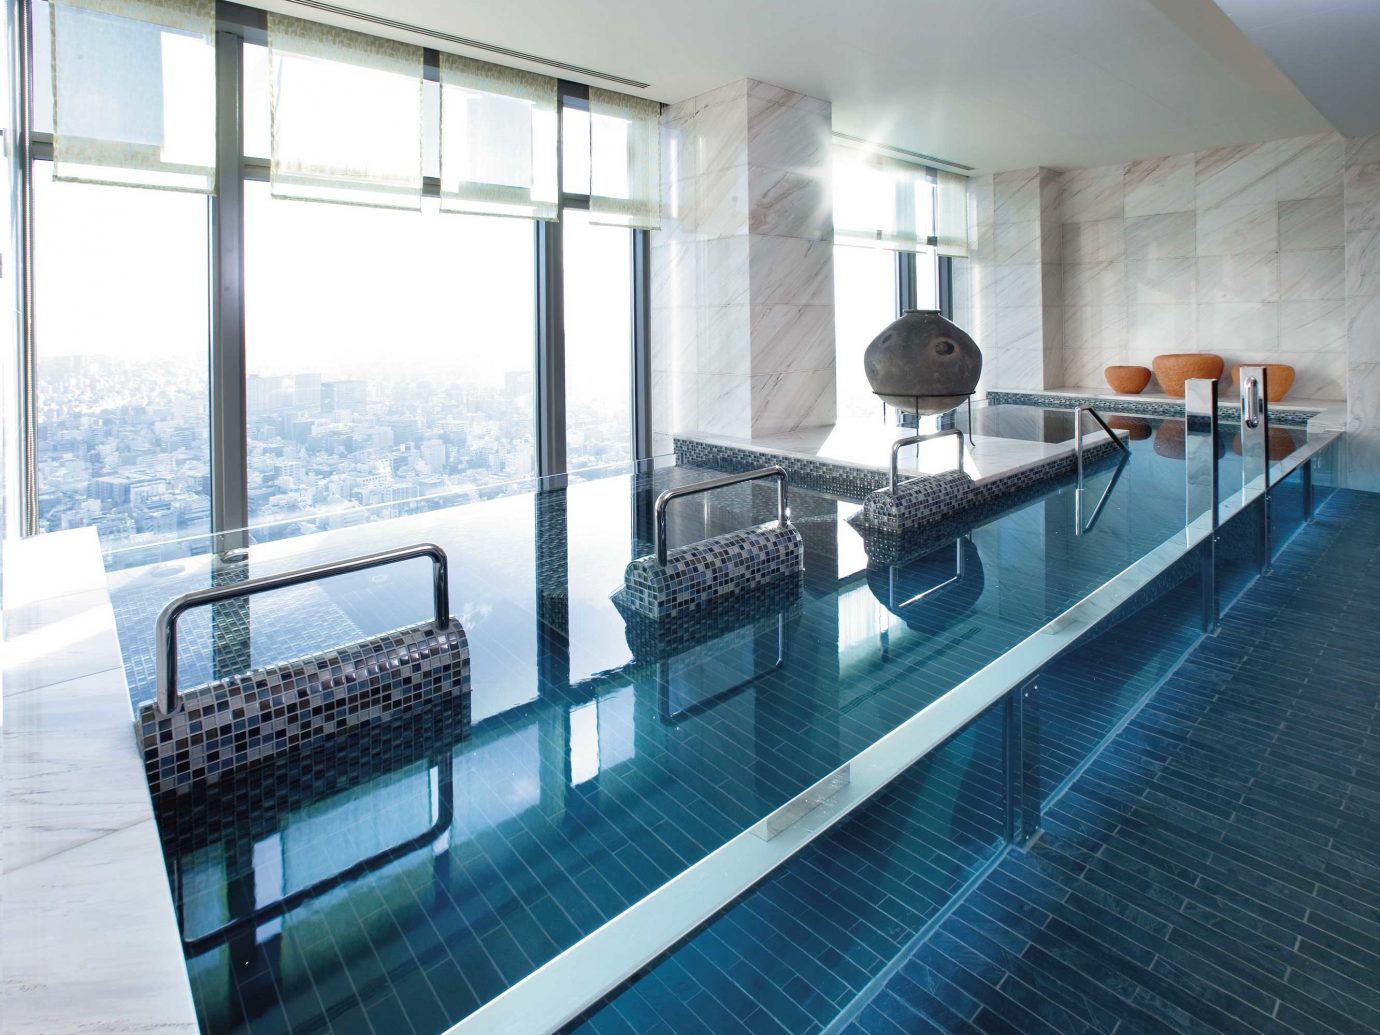 City Elegant Luxury Modern Pool Scenic views indoor floor swimming pool property room condominium ceiling interior design apartment